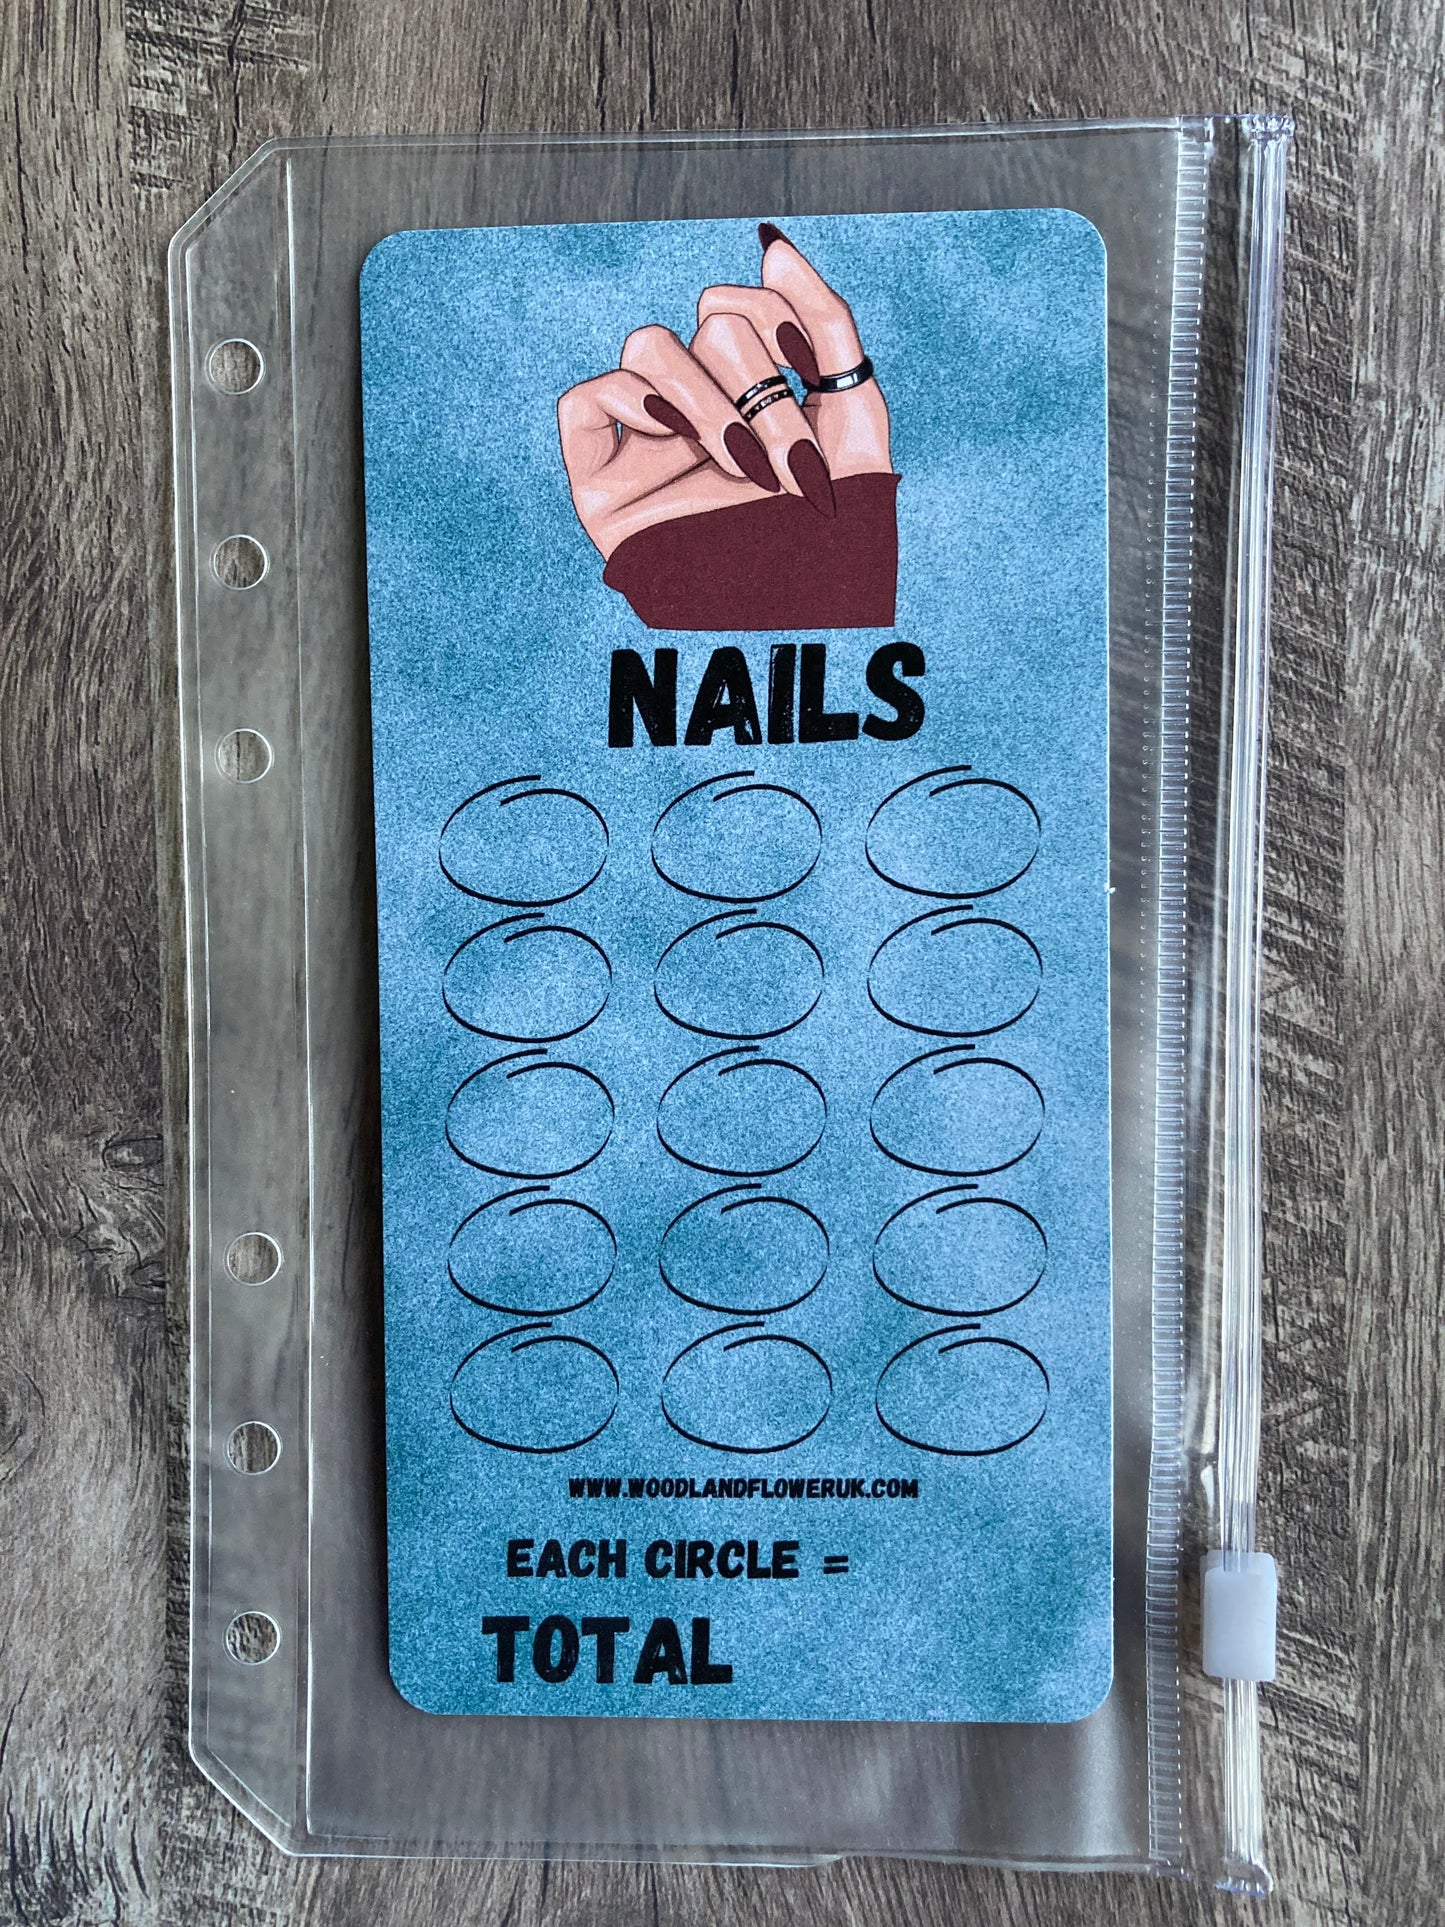 Saving challenge “nails”